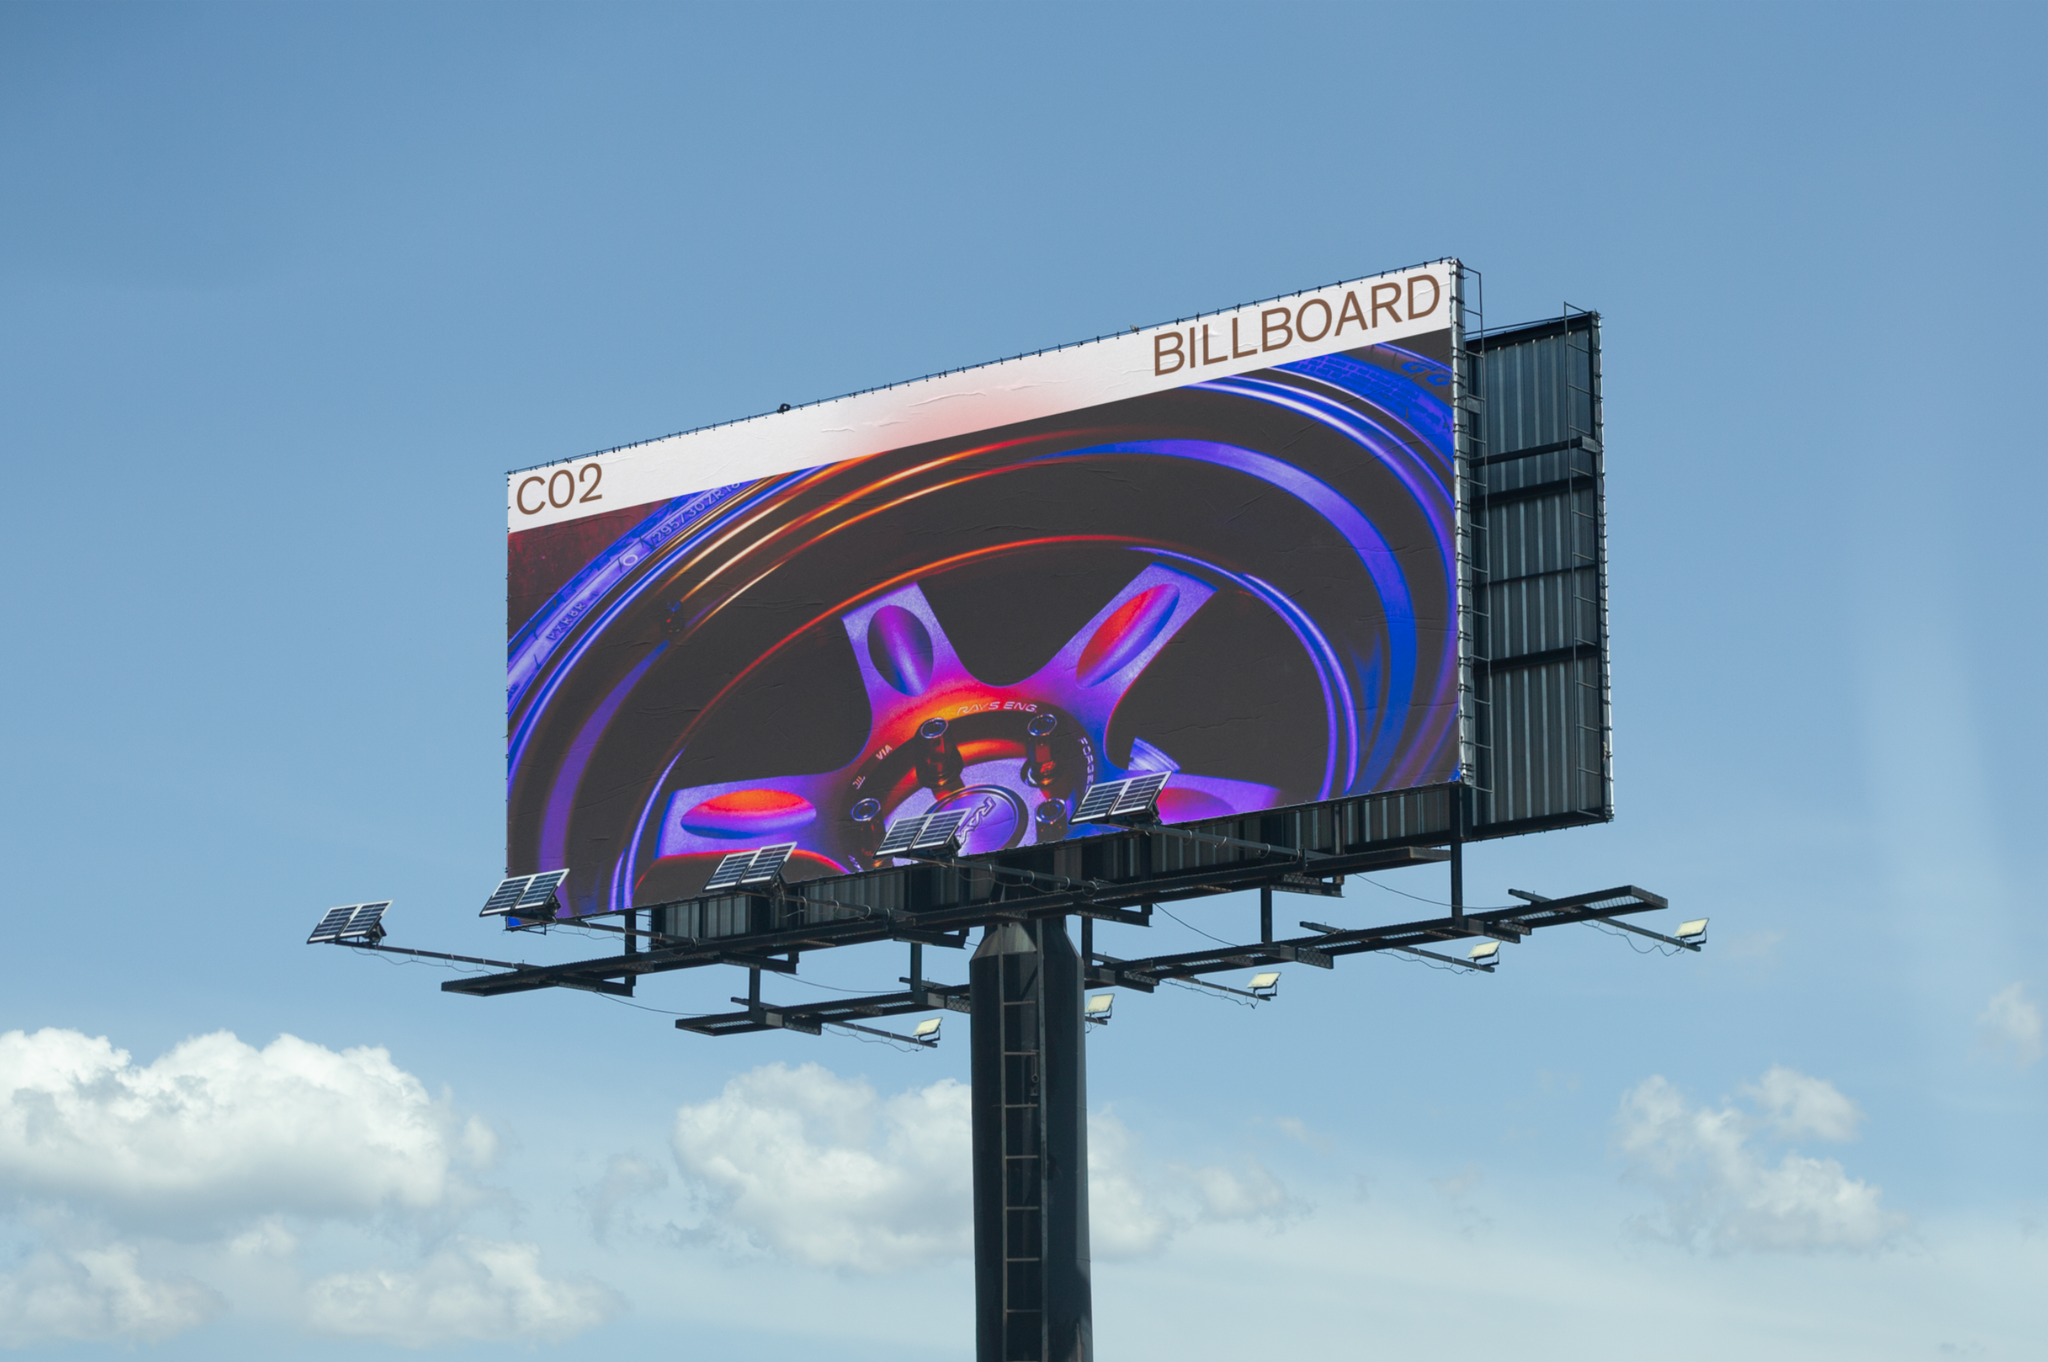 ARTD-C02-Billboard-001